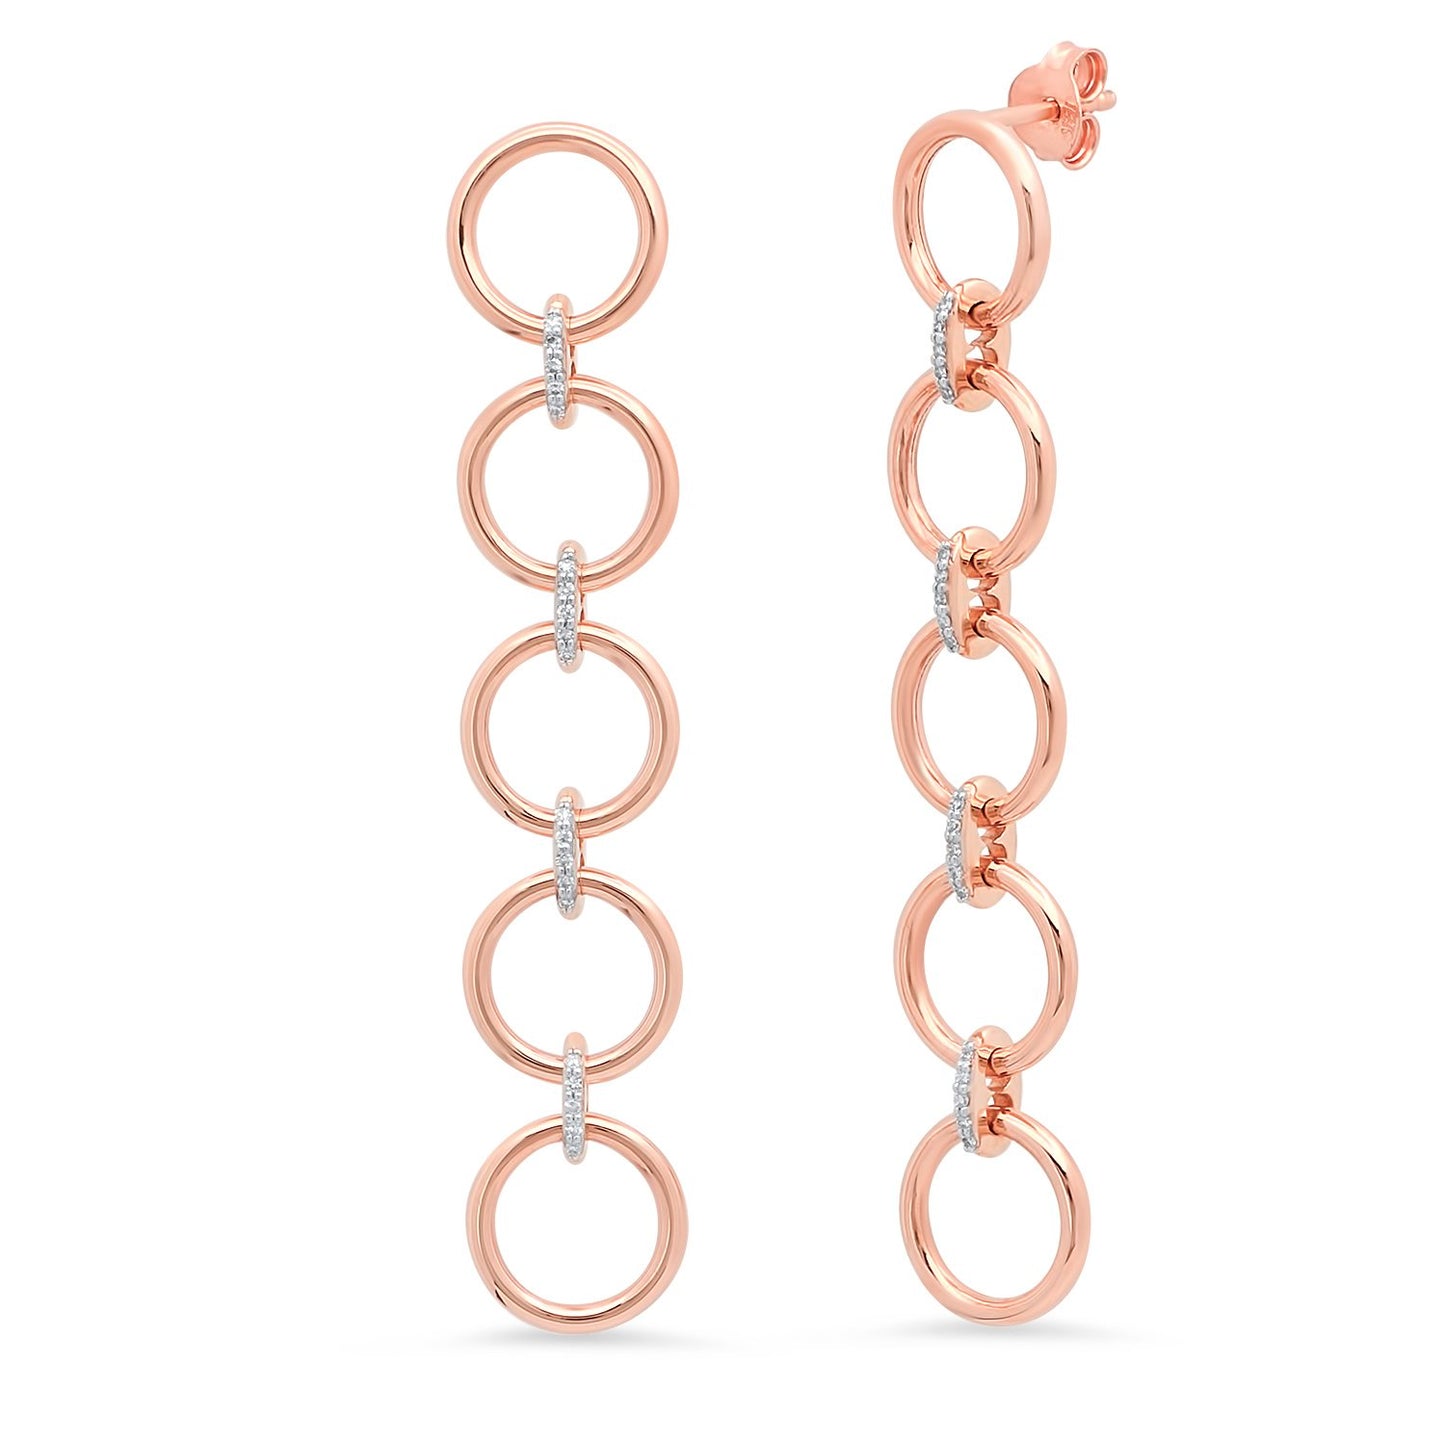 14K Rose Gold Five Loop Earrings with Diamond Links